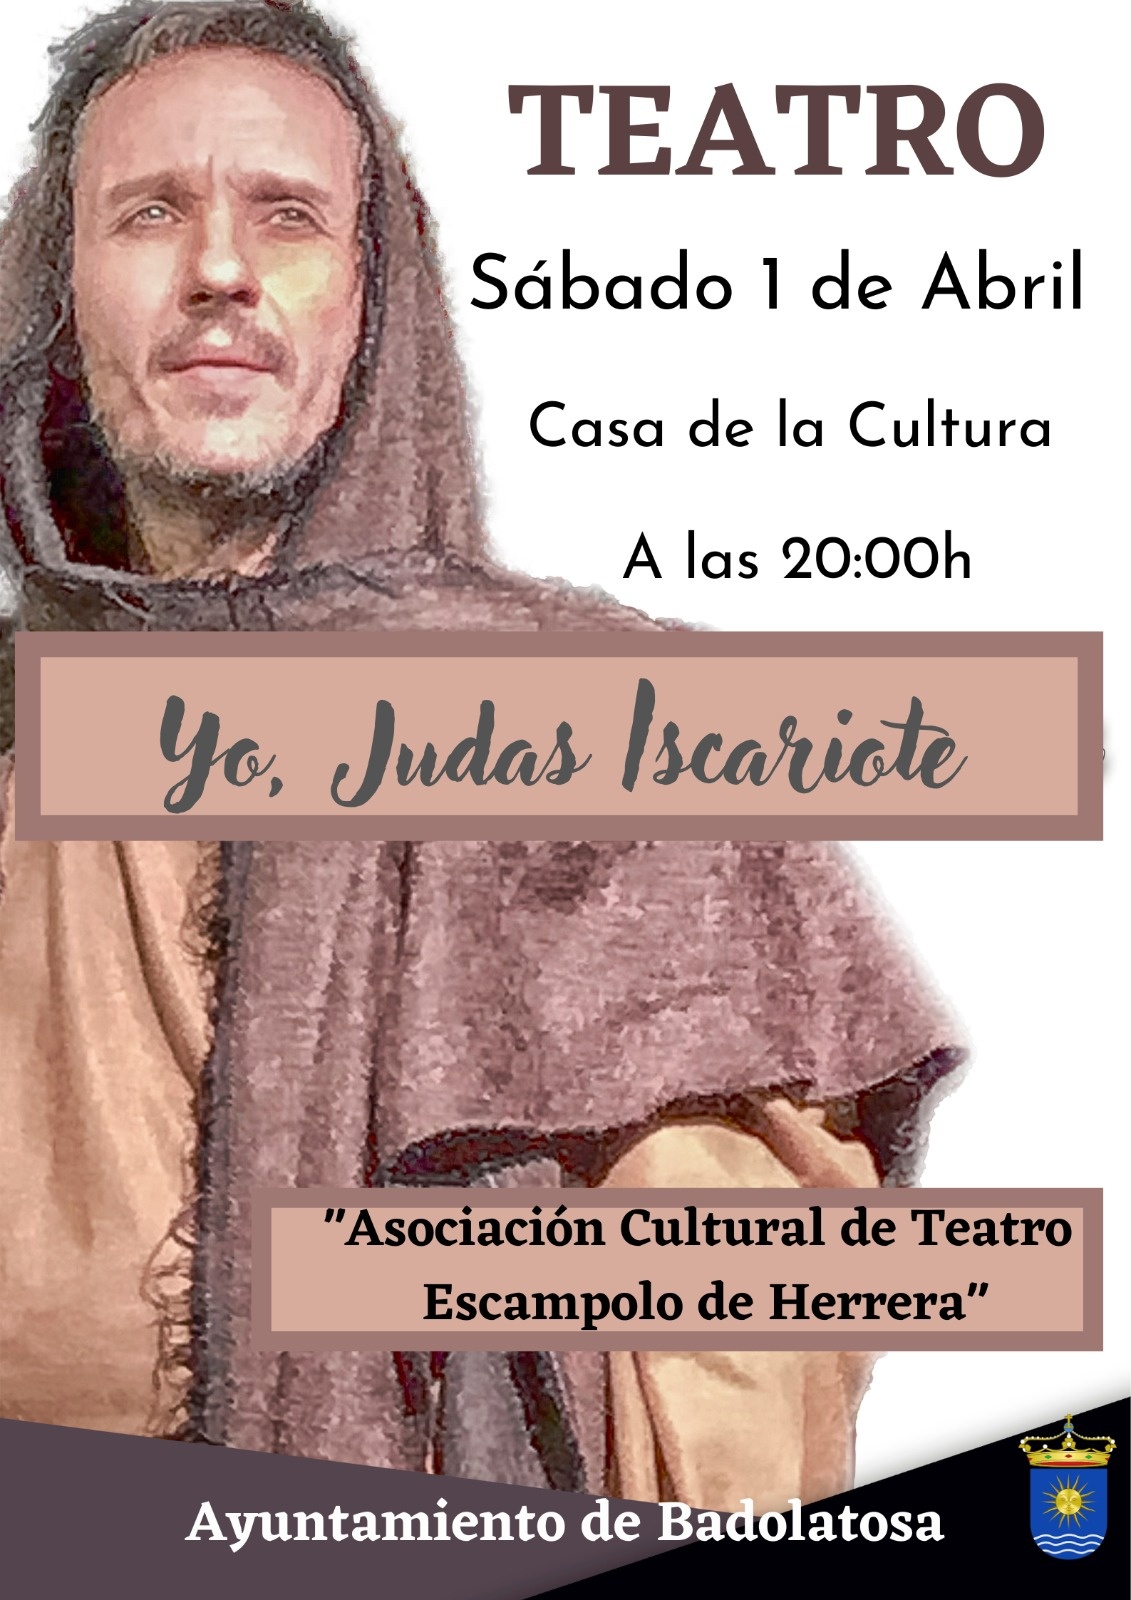 teatro 'yo judas iscariote'